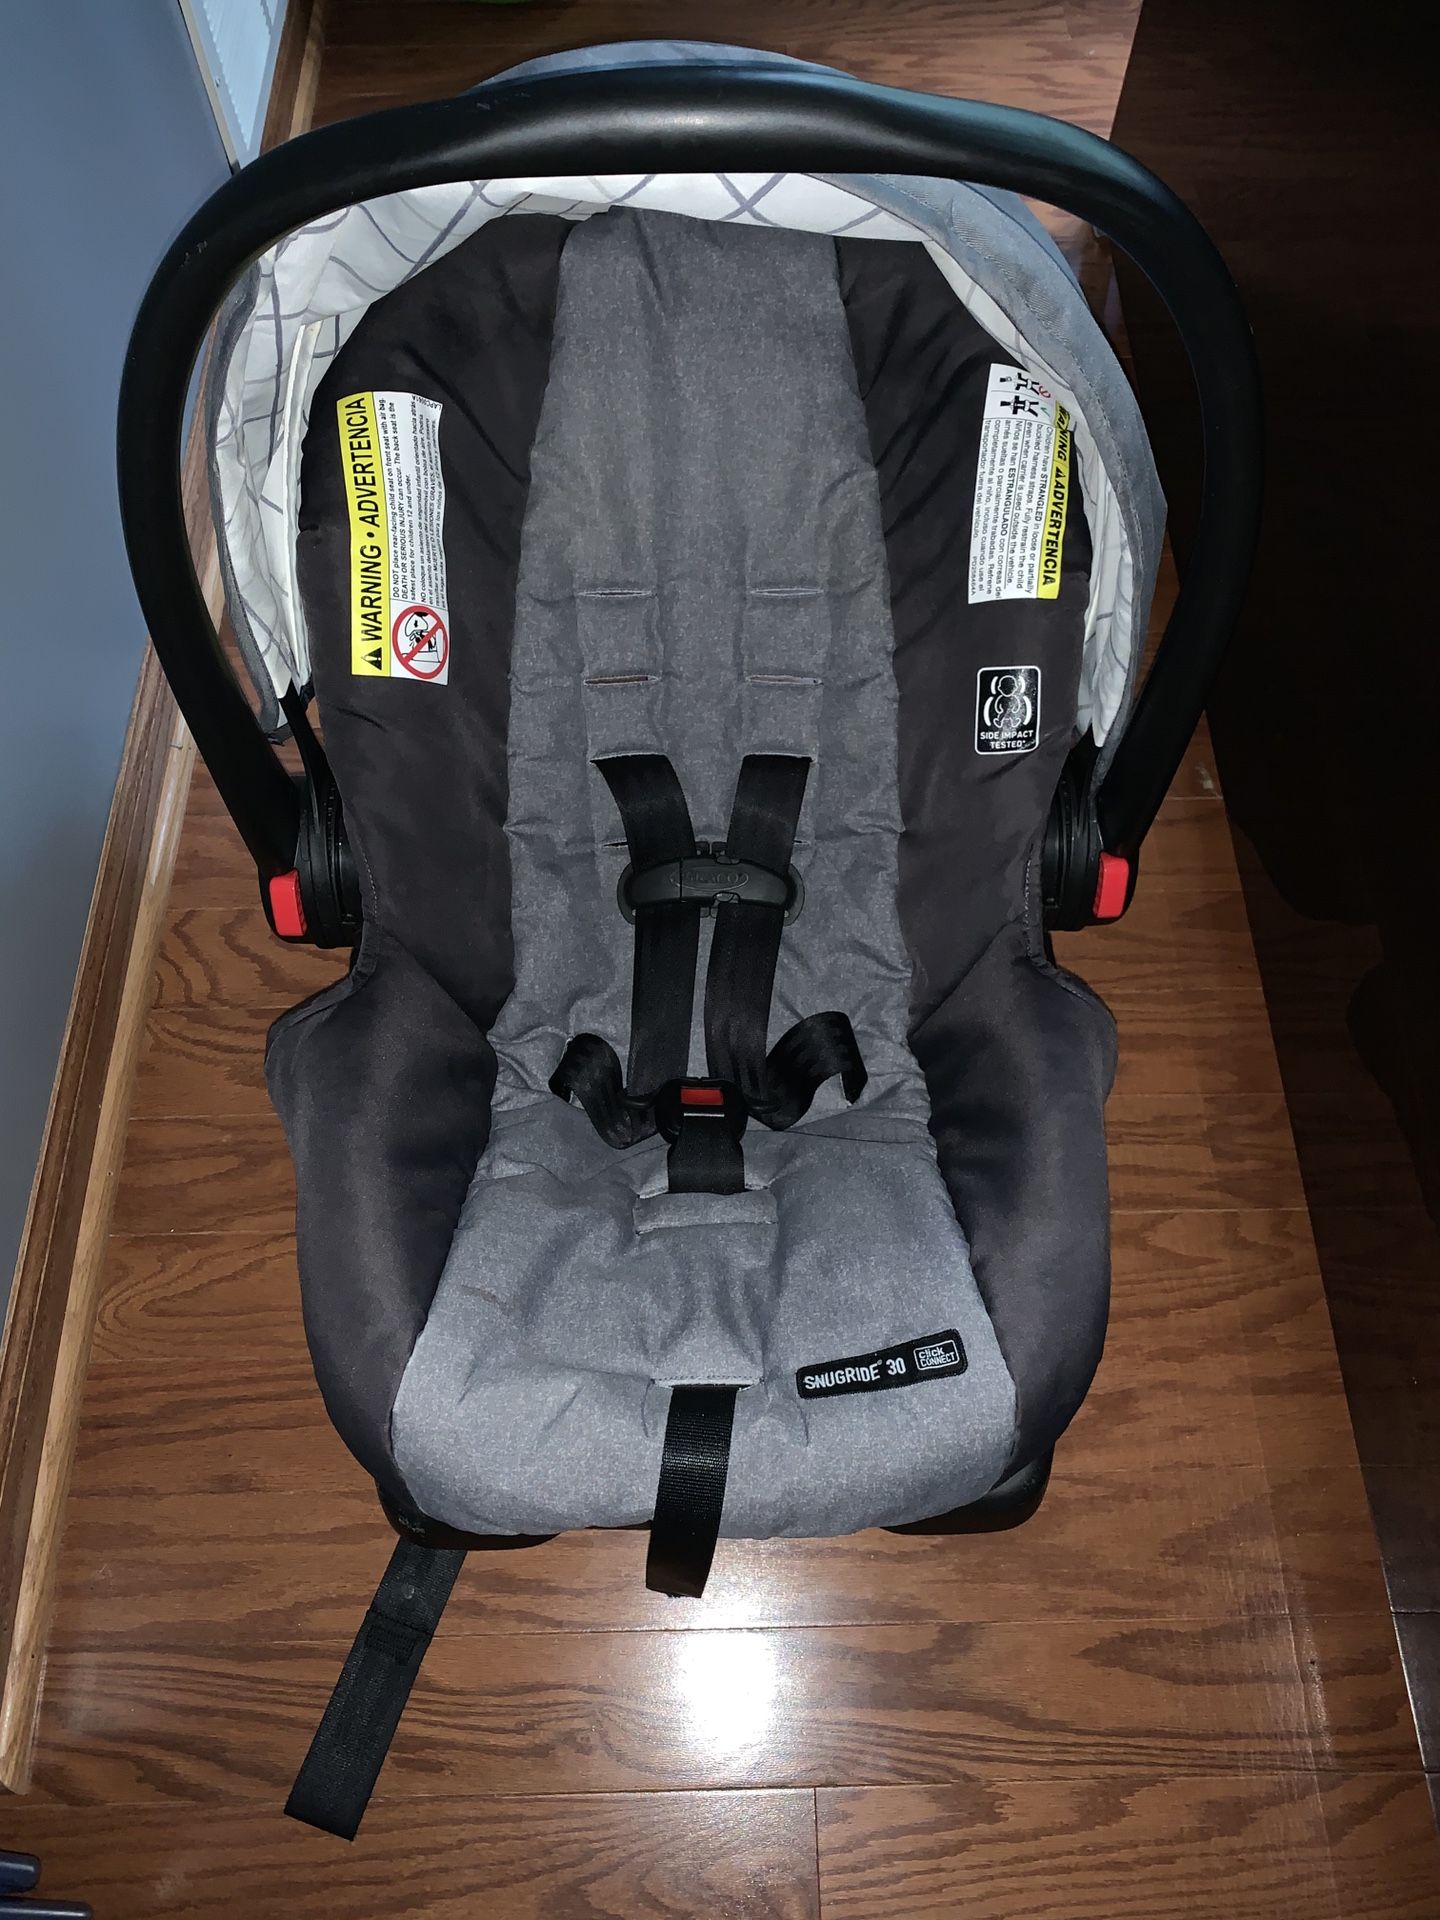 Graco baby car seats -5-21-2018